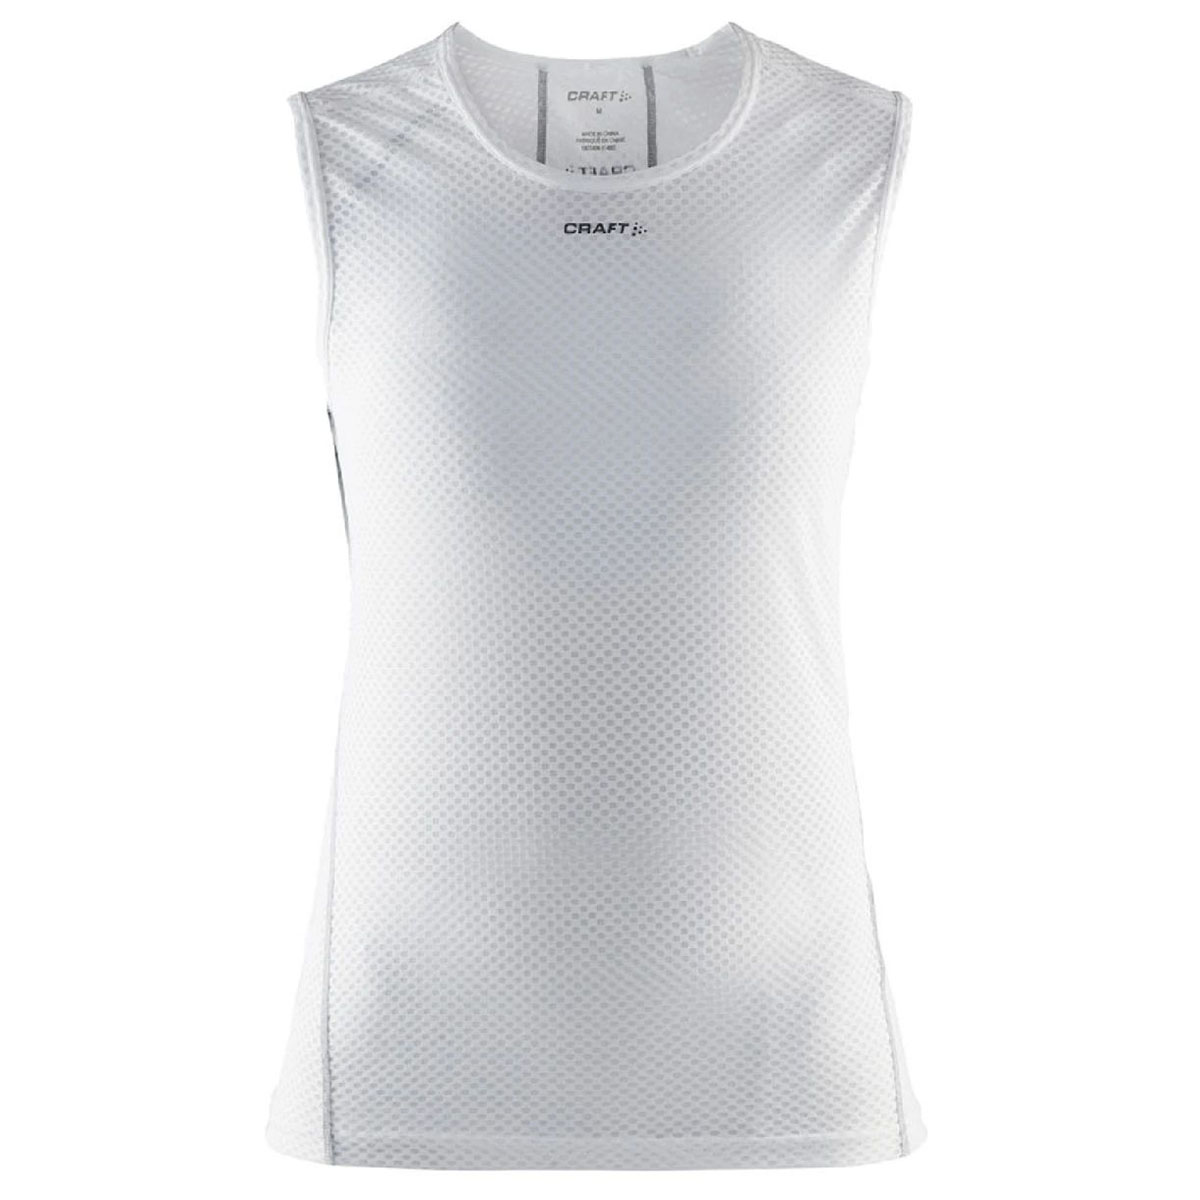 Produktbild von CRAFT Cool Mesh Superlight Damen Ärmelloses Unterhemd - Weiß